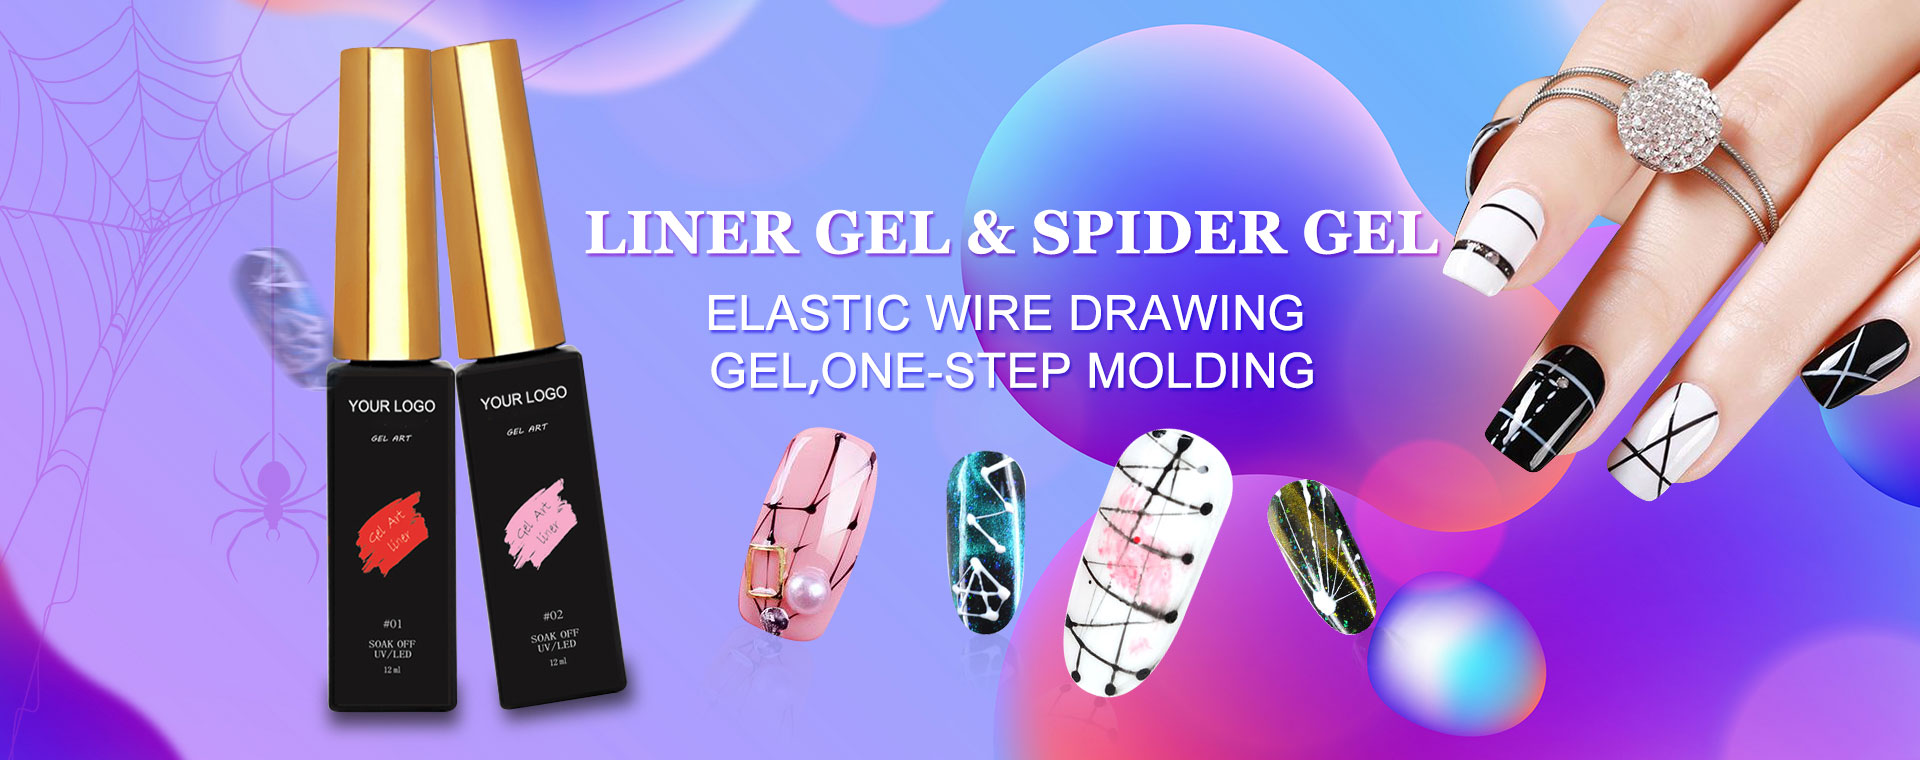 Liner Gel & Spider Gel Manufacturers